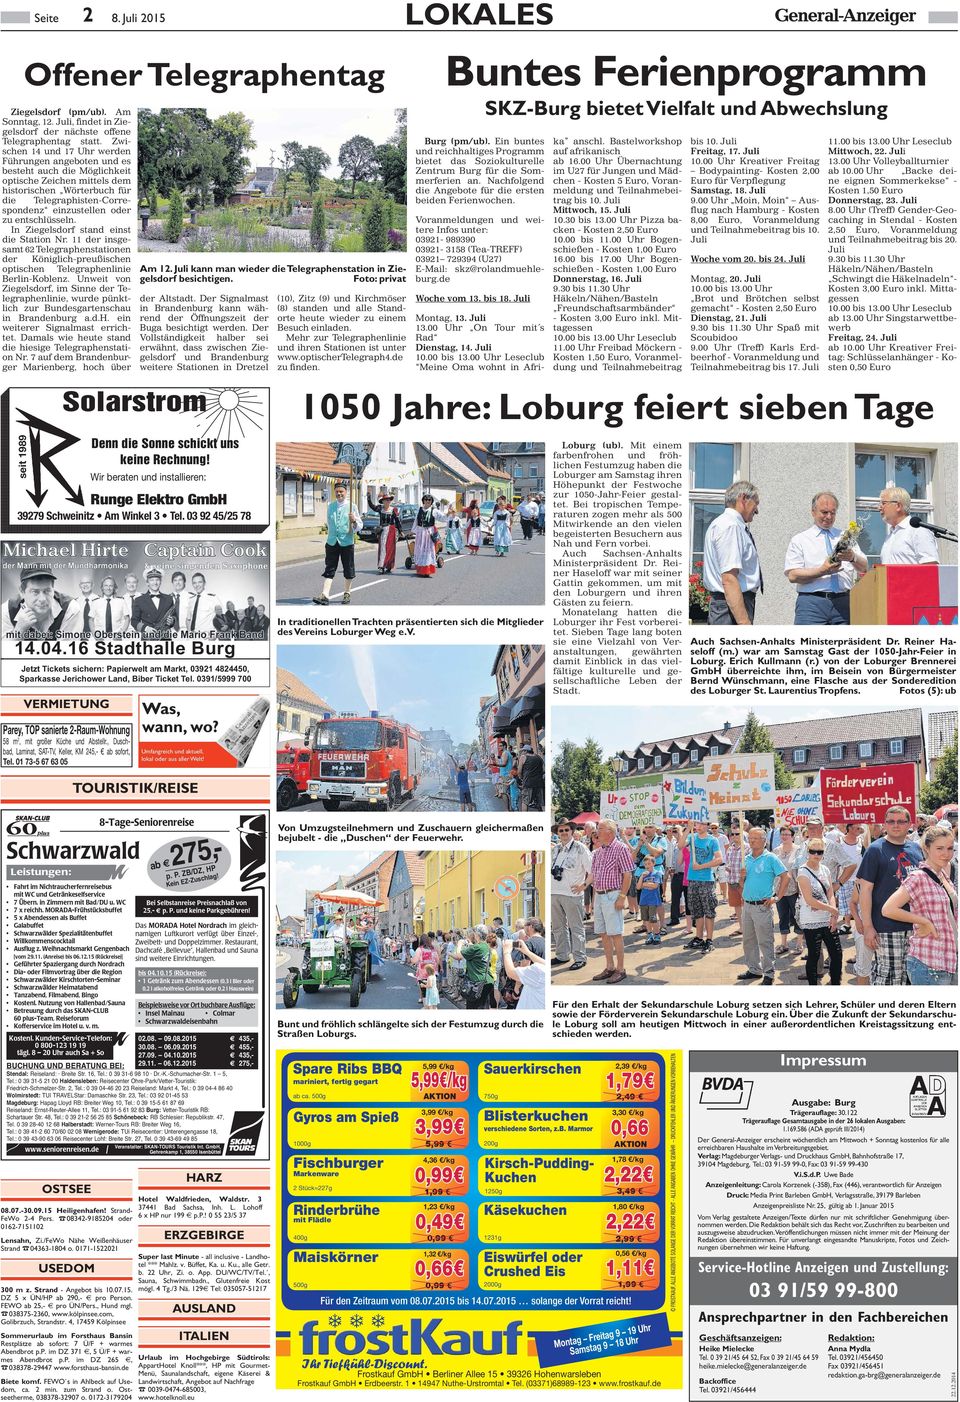 entschlüsseln. n Ziegelsdorf stand einst die tation r. 11 der insgesamt 62 elegraphenstationen der Königlich-preußischen optischen elegraphenlinie Berlin-Koblenz.